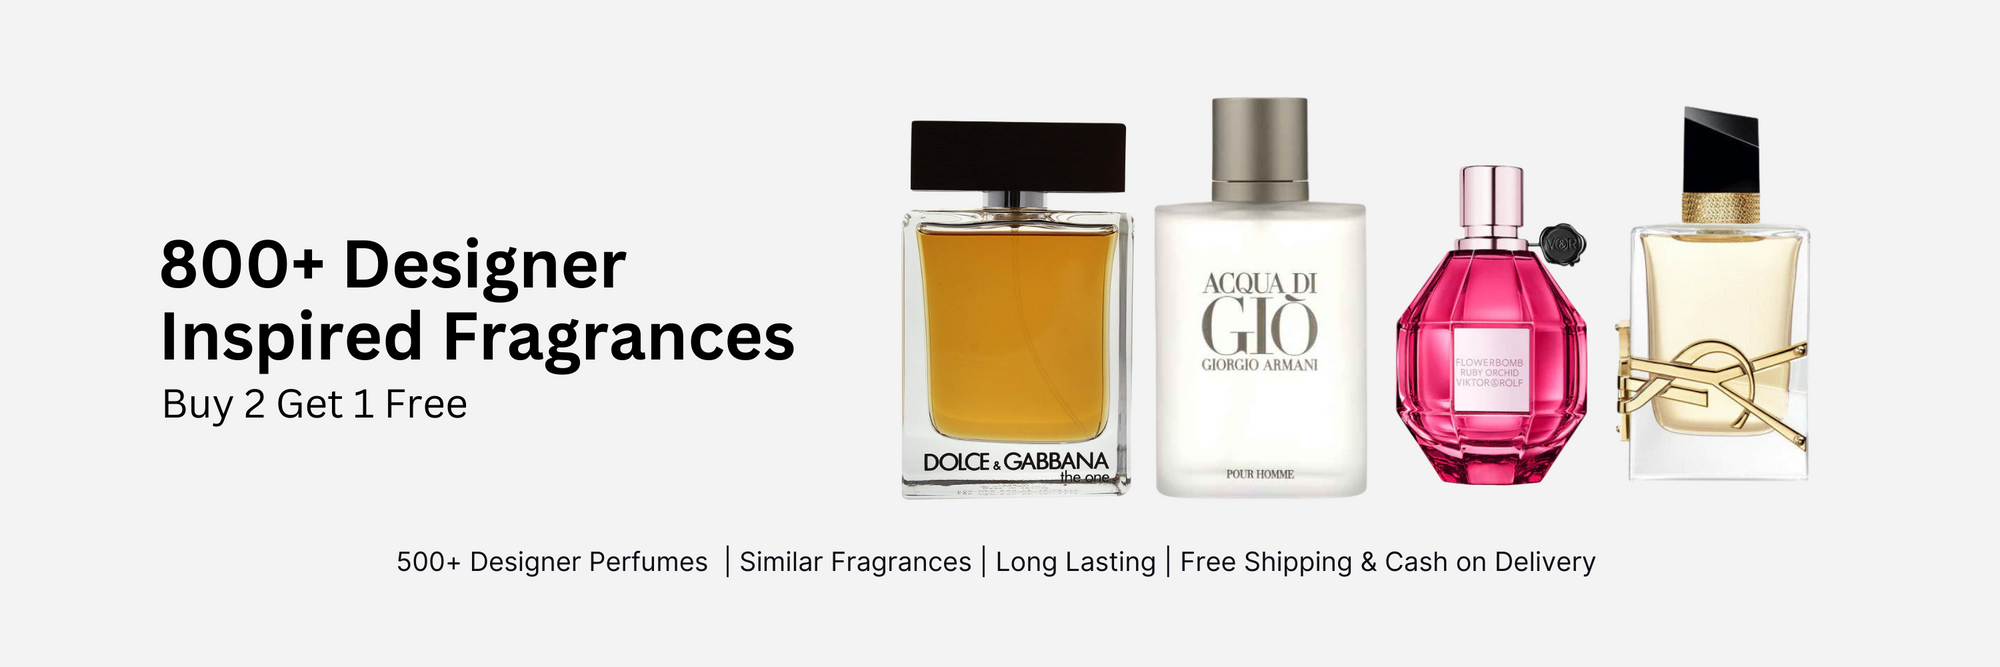 Azzaro Silver Black & Ombre Nomade Louis Vuitton, Perfume, Clones